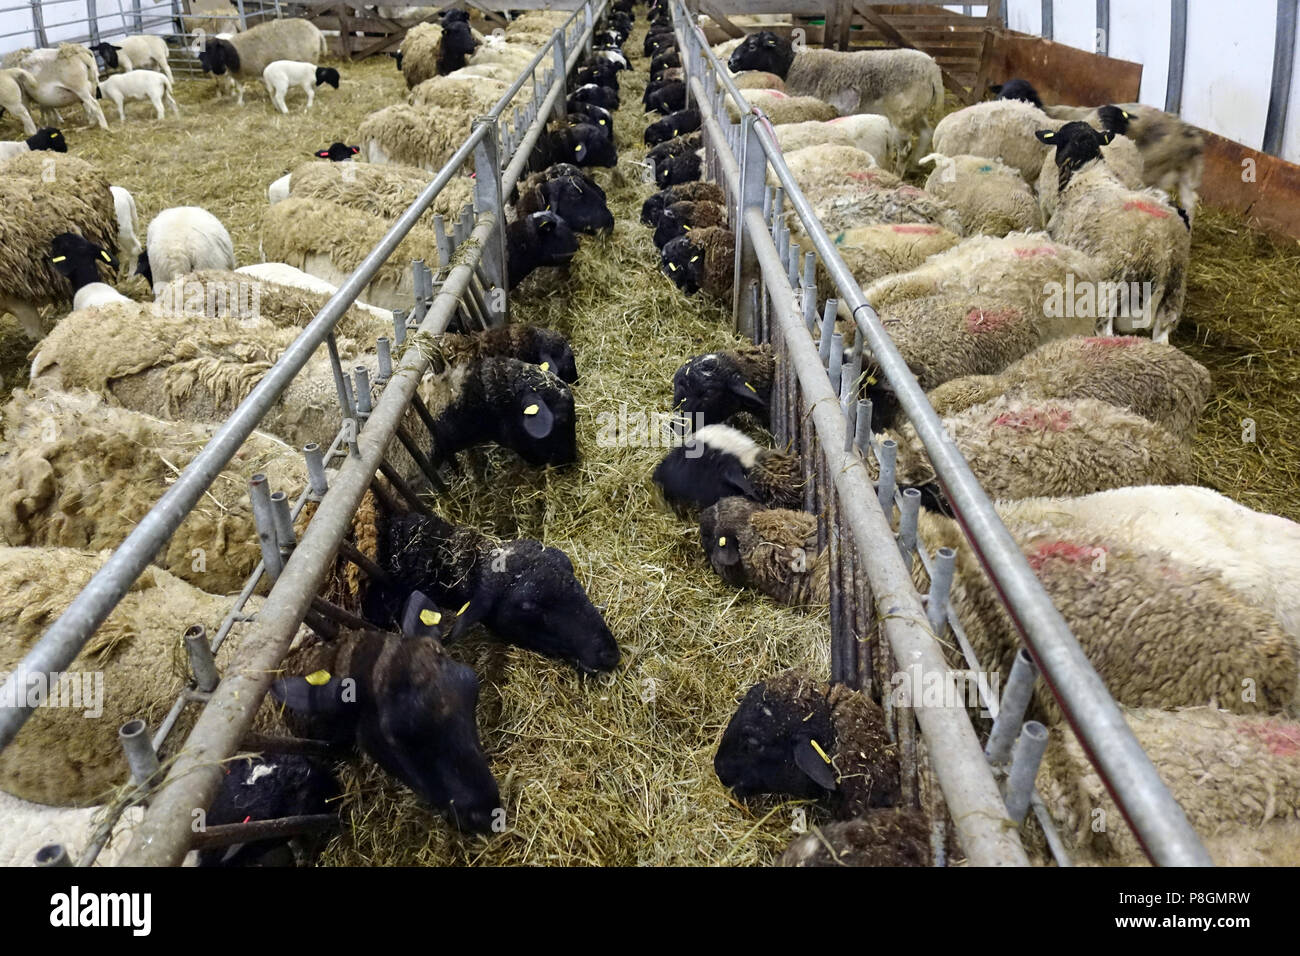 Nouveau Kaetwin, Allemagne, dans le mouton Dorper foin manger stable Banque D'Images